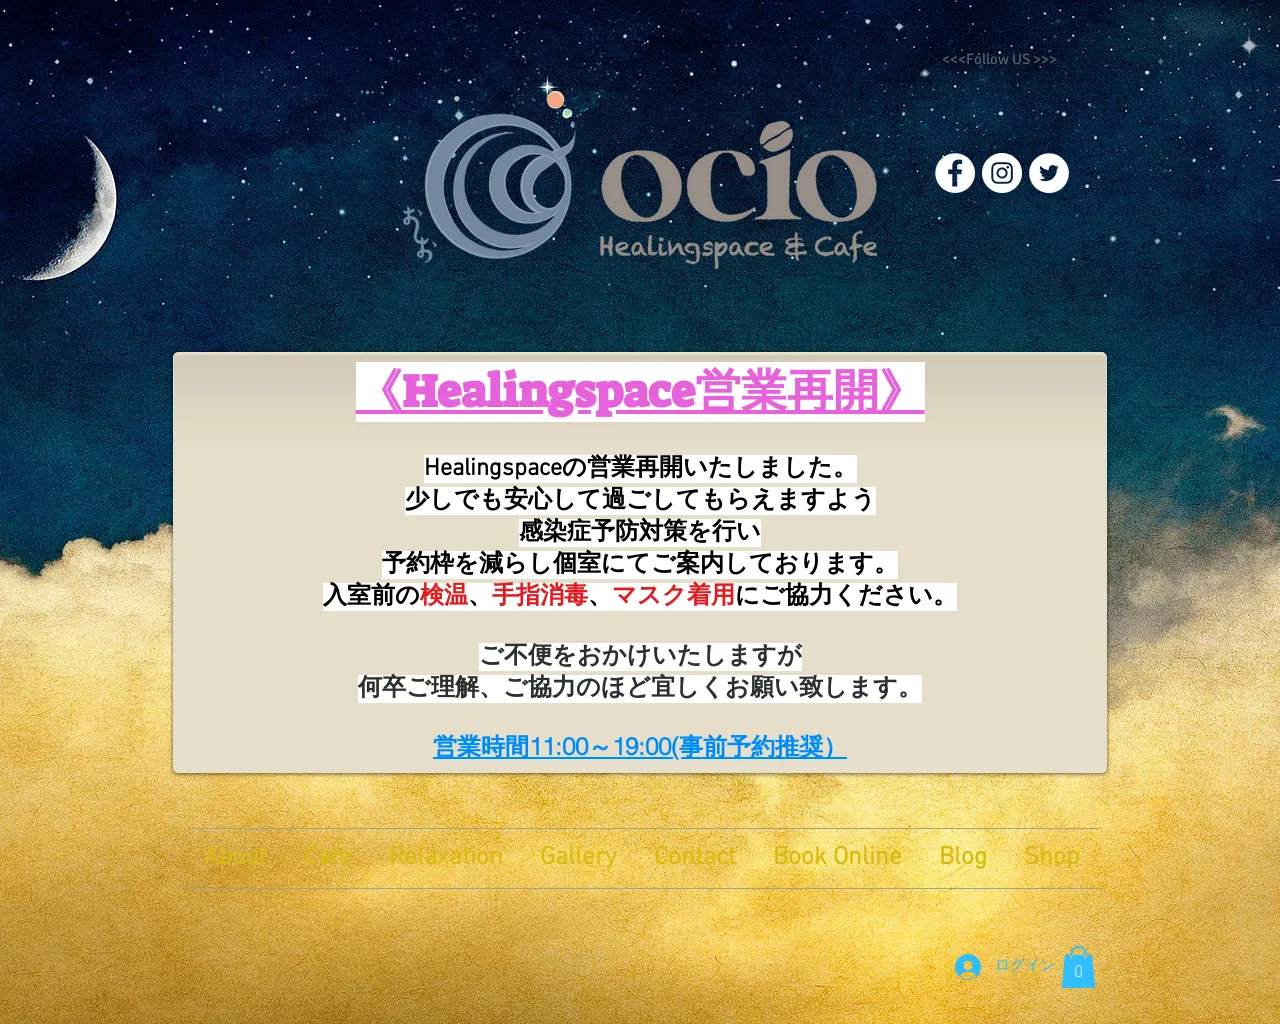 Ocio Healingspace & Cafe site